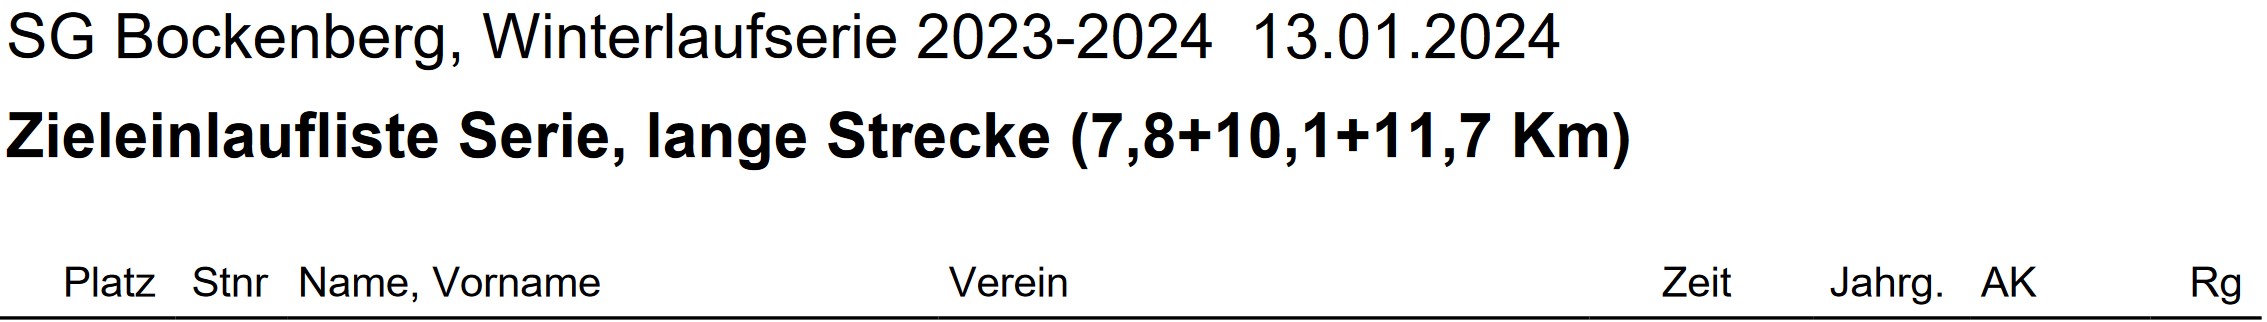 Bockenberg 2023 2024 Gesamt Ergebnisse Teil 1